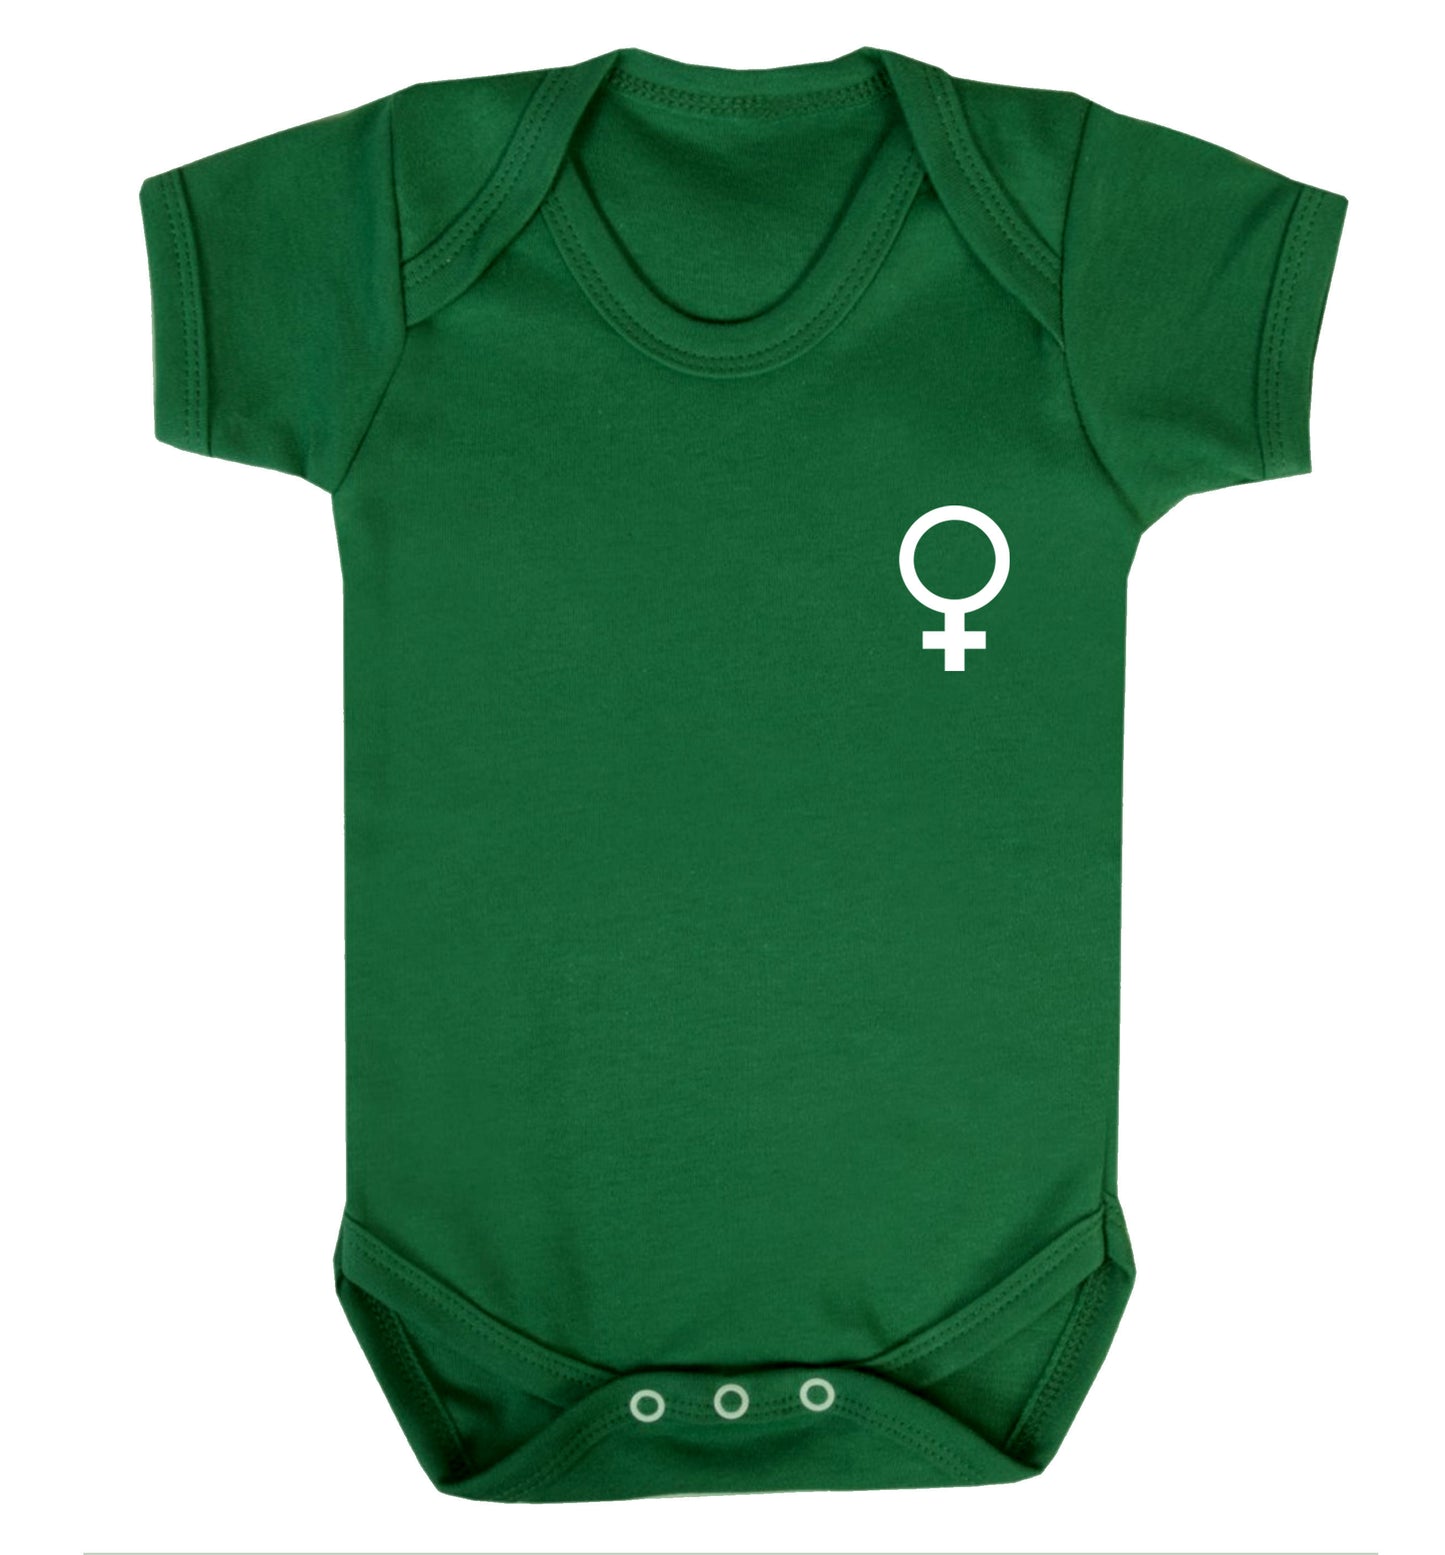 Female pocket symbol Baby Vest green 18-24 months